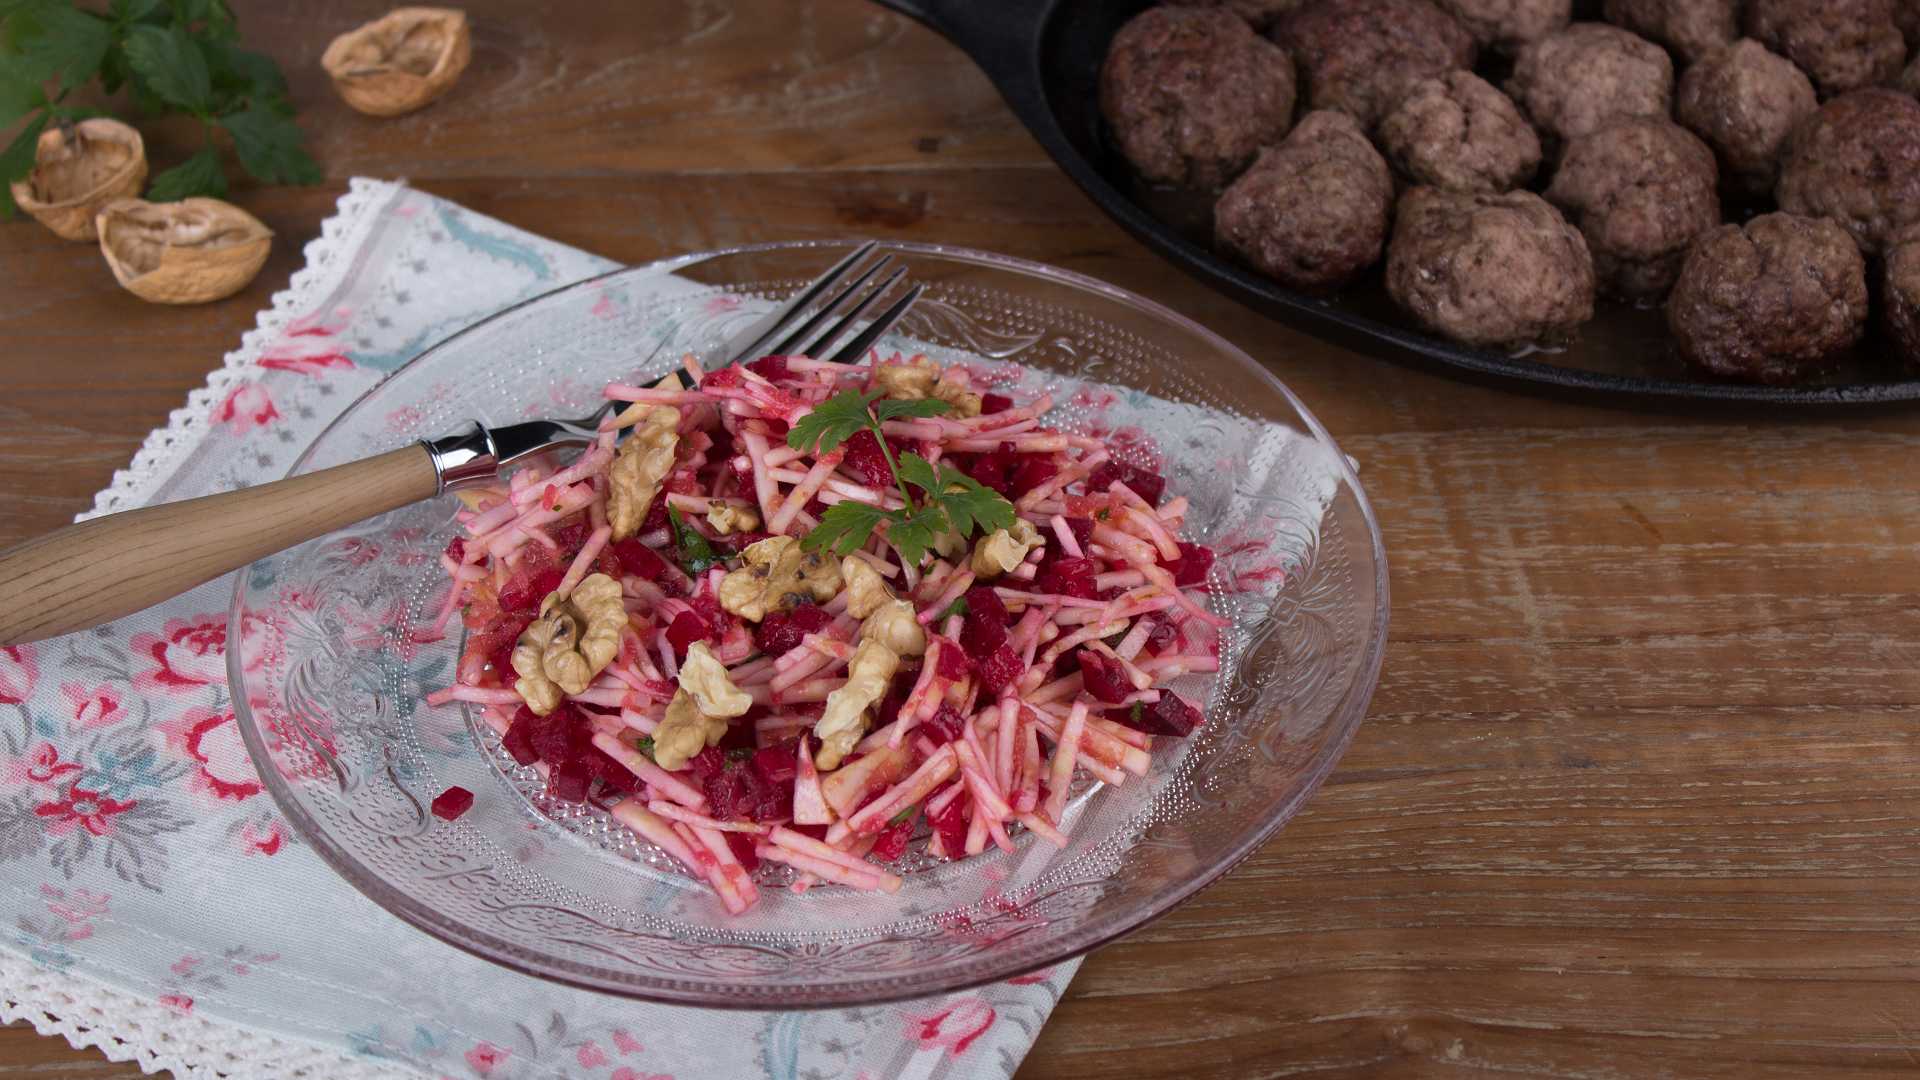 Auf einem Glasteller ist ein Sellerie-Rote-Bete Salat angerichtet, im Hintergrund ist eine Pfanne mit Hackbällchen